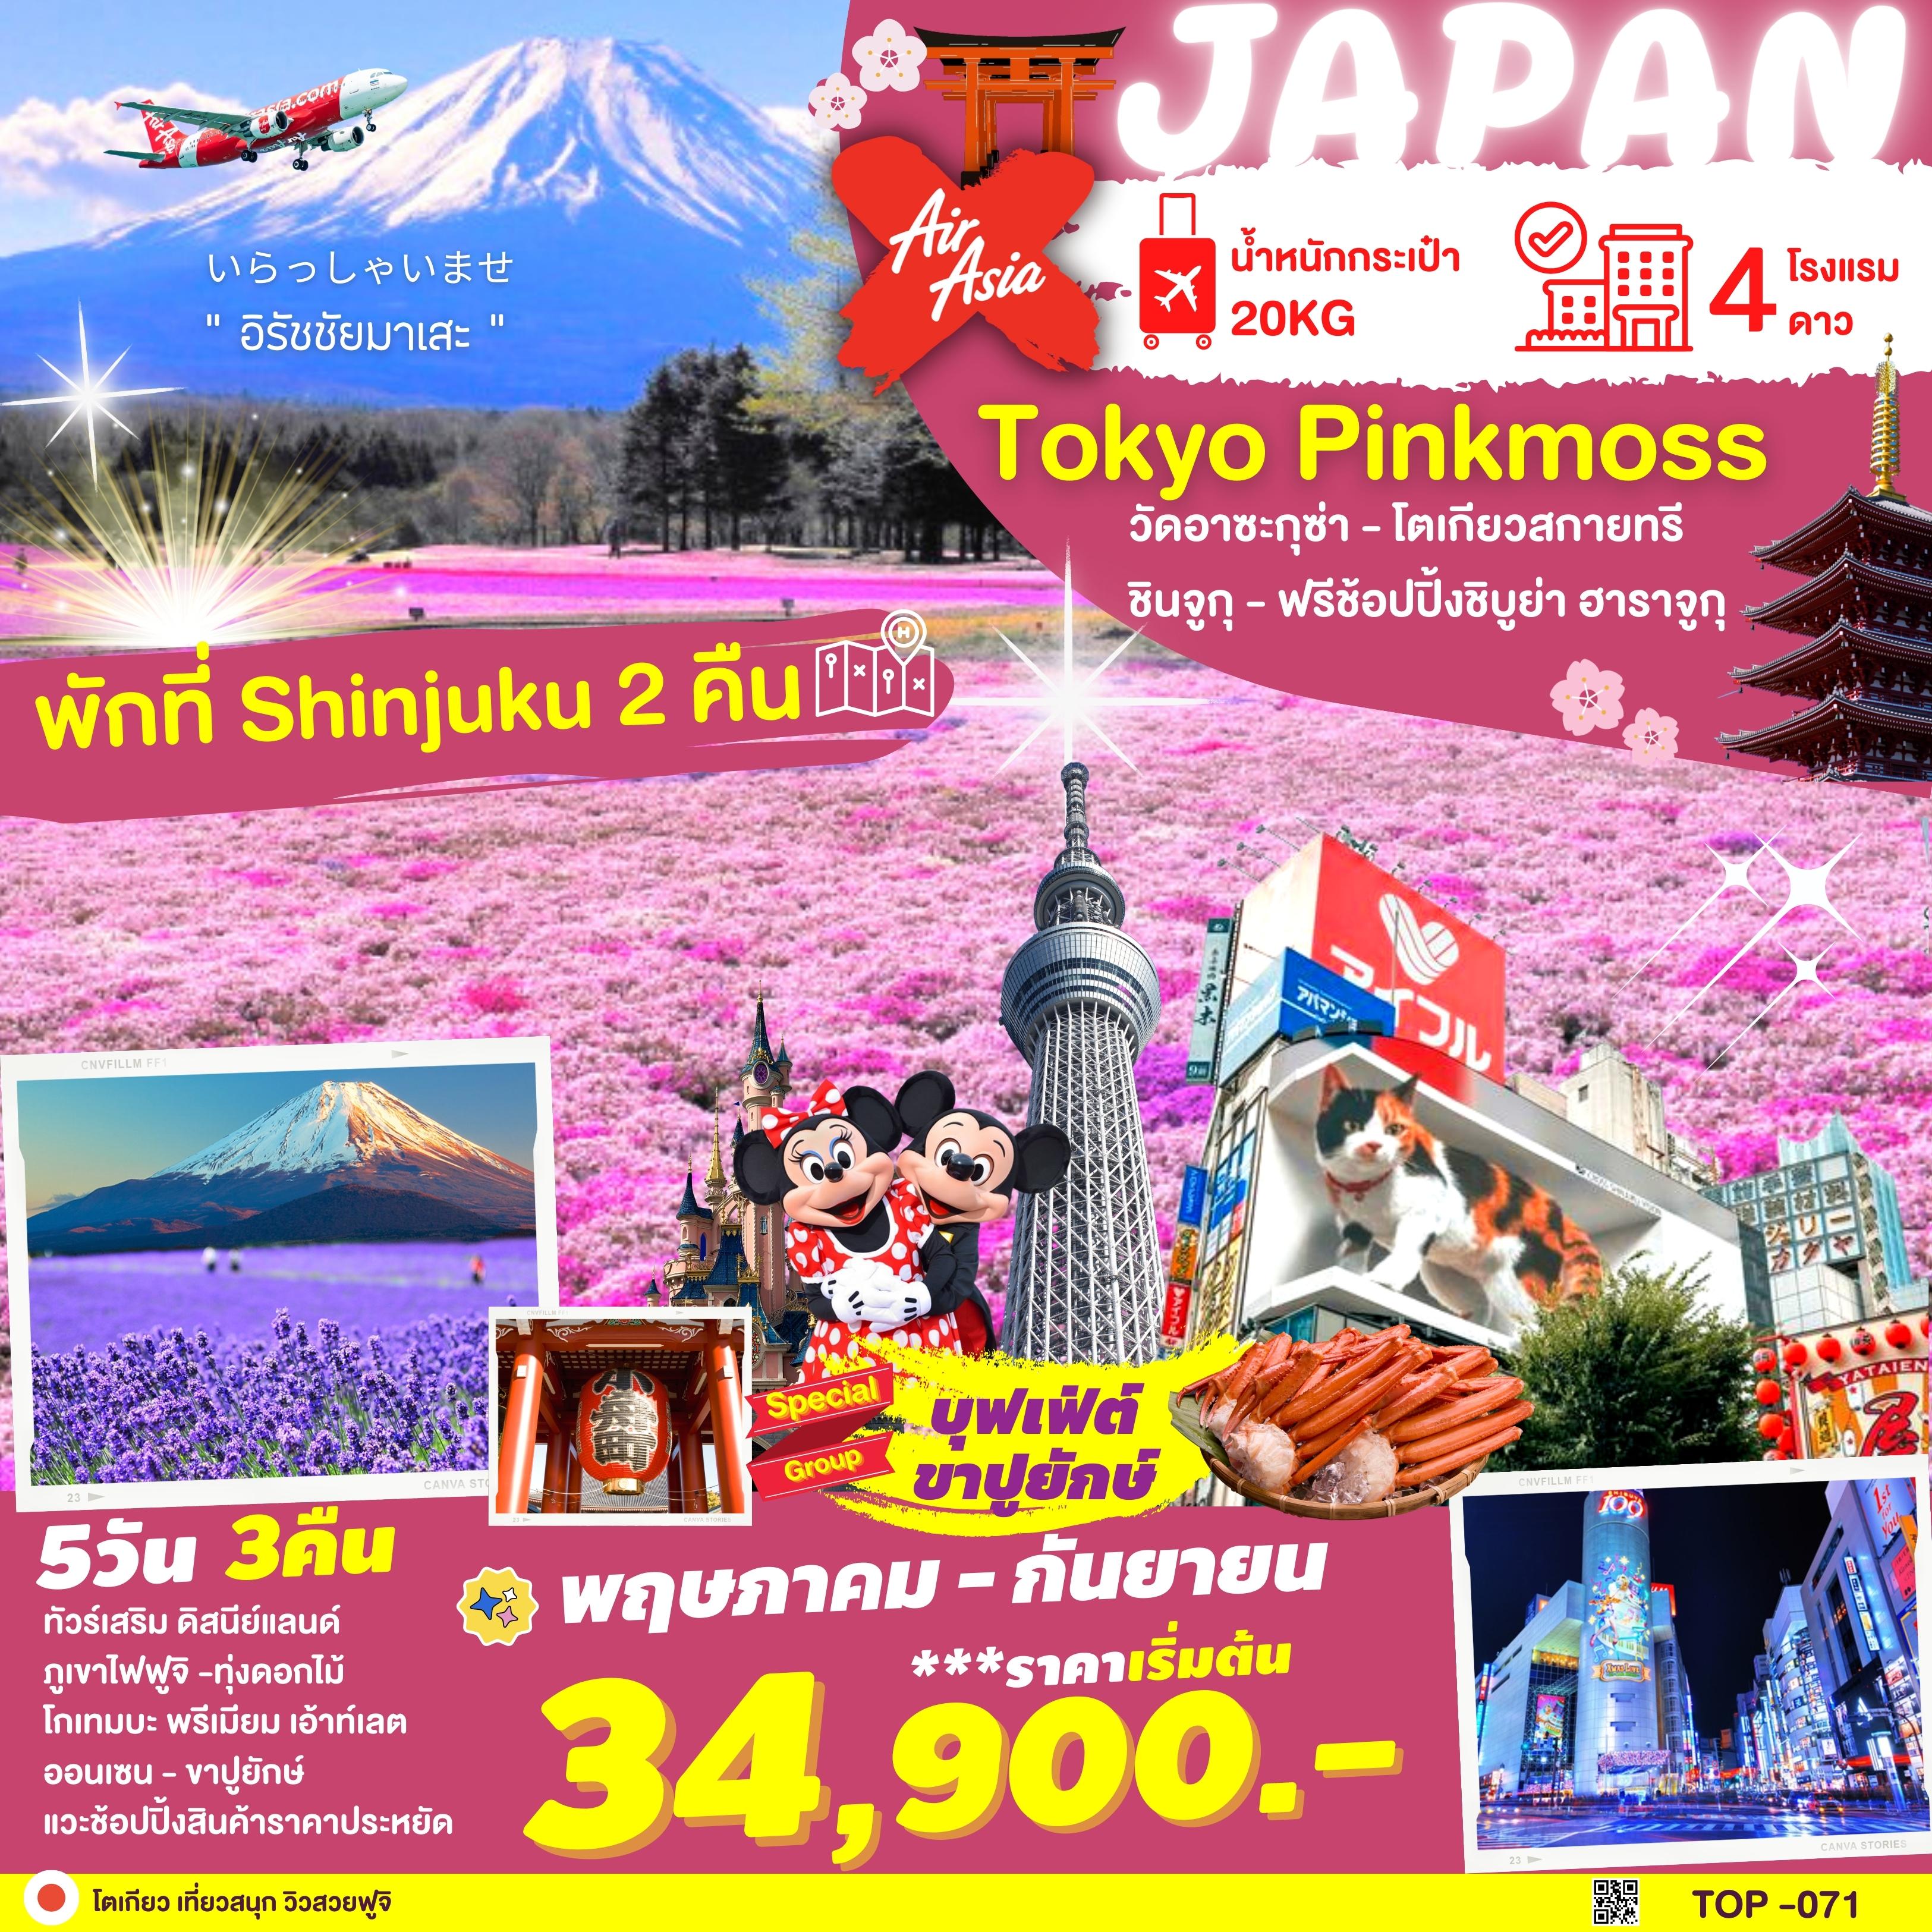 TOKYO FUJI PINKMOSS ญี่ปุ่น โตเกียว ฟูจิ 5วัน 3คืน เดินทาง พ.ค.-ก.ย.66 เริ่มต้น 34,900.- (XJ)